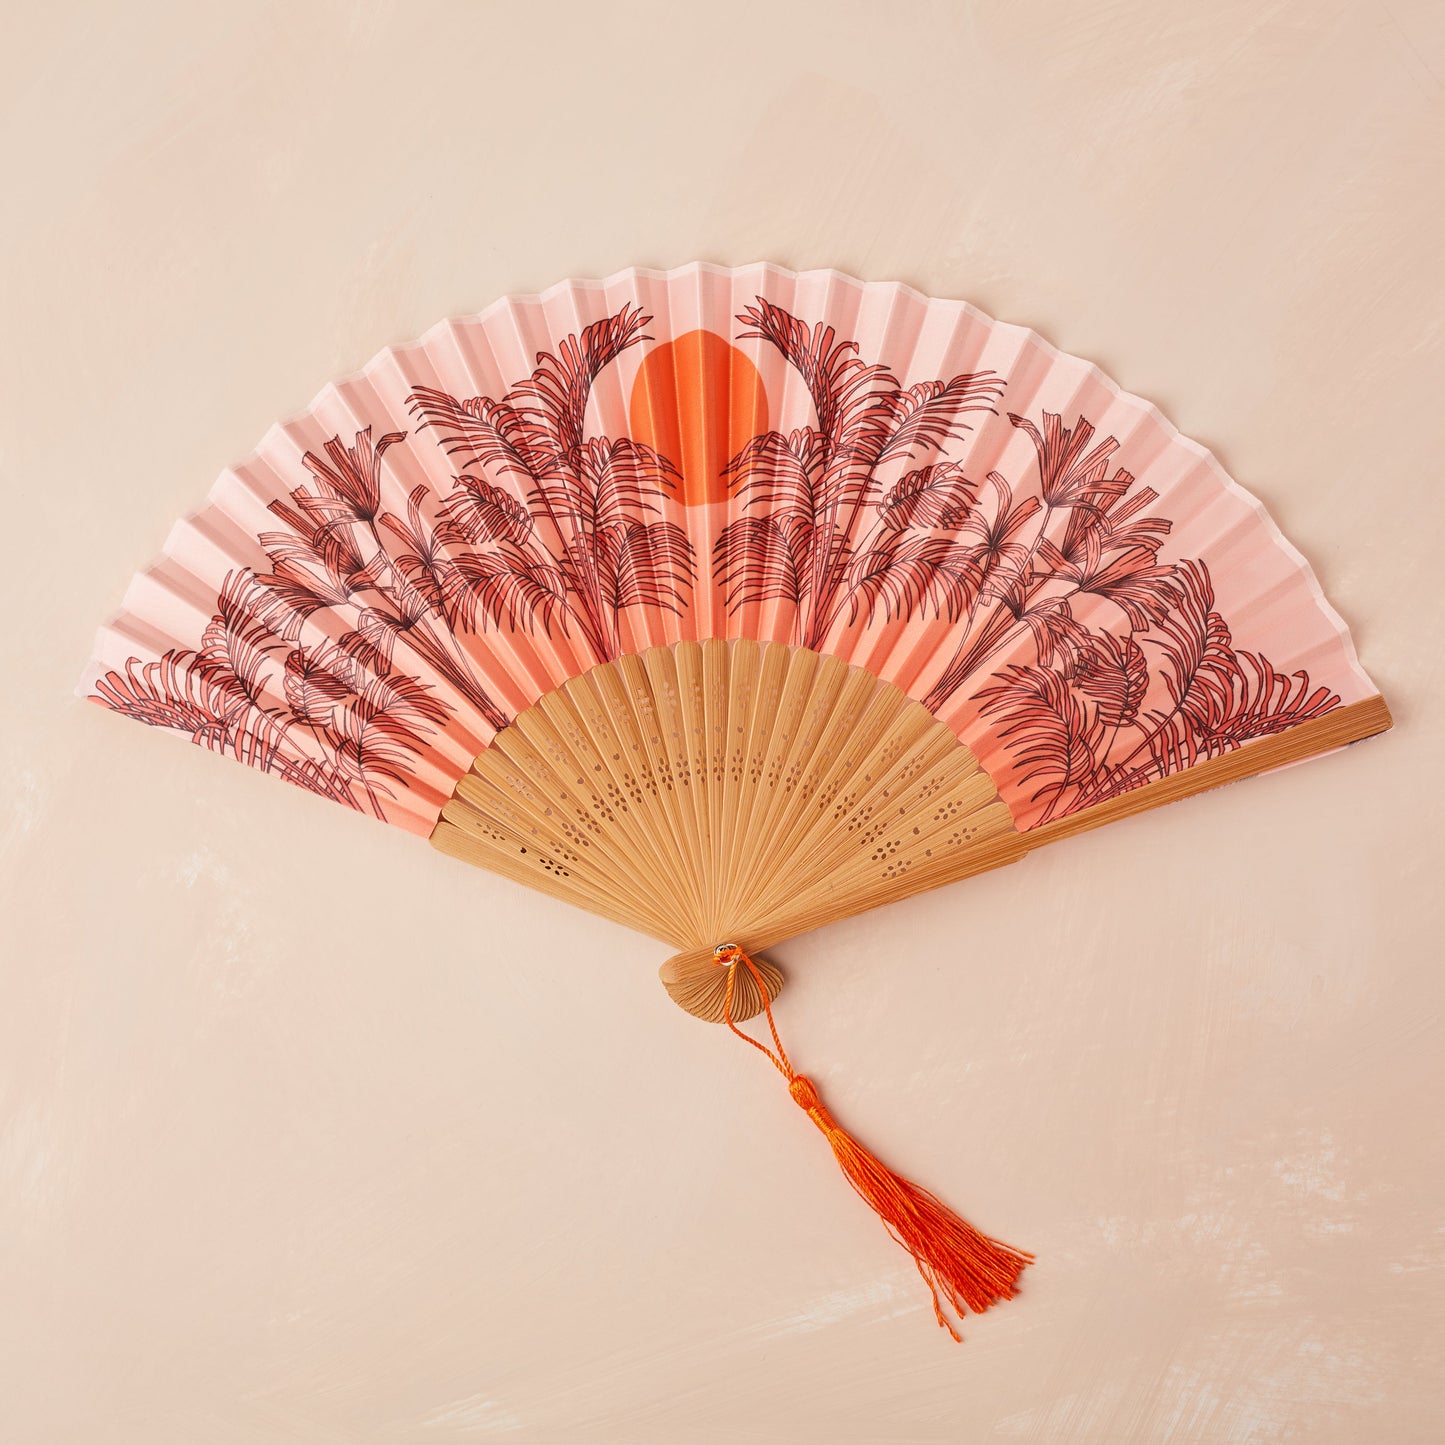 Small Folding Fan in Peachy Orange